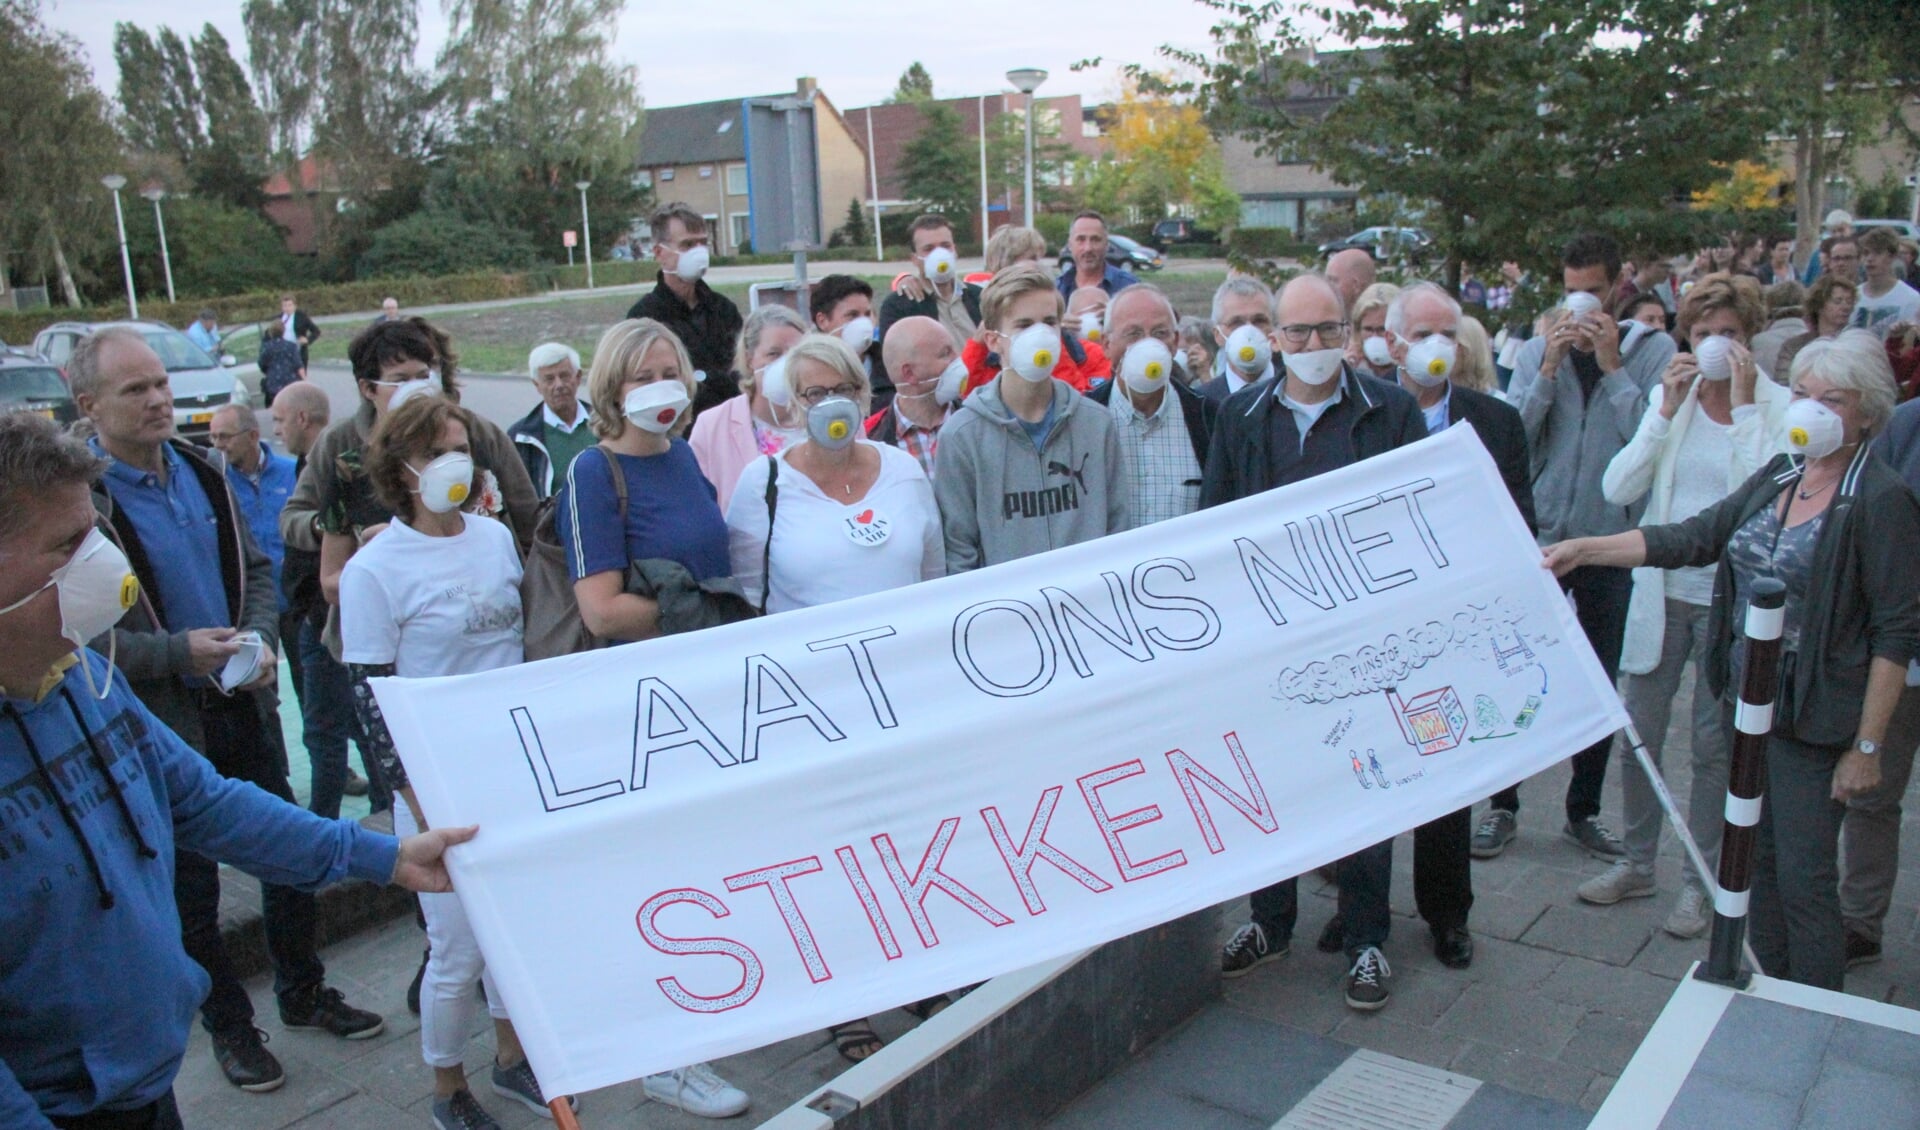 De bouwaanvragen van diverse biomassacentrales in Waddinxveen leidde tot protest. (foto: archief Hart van Holland)